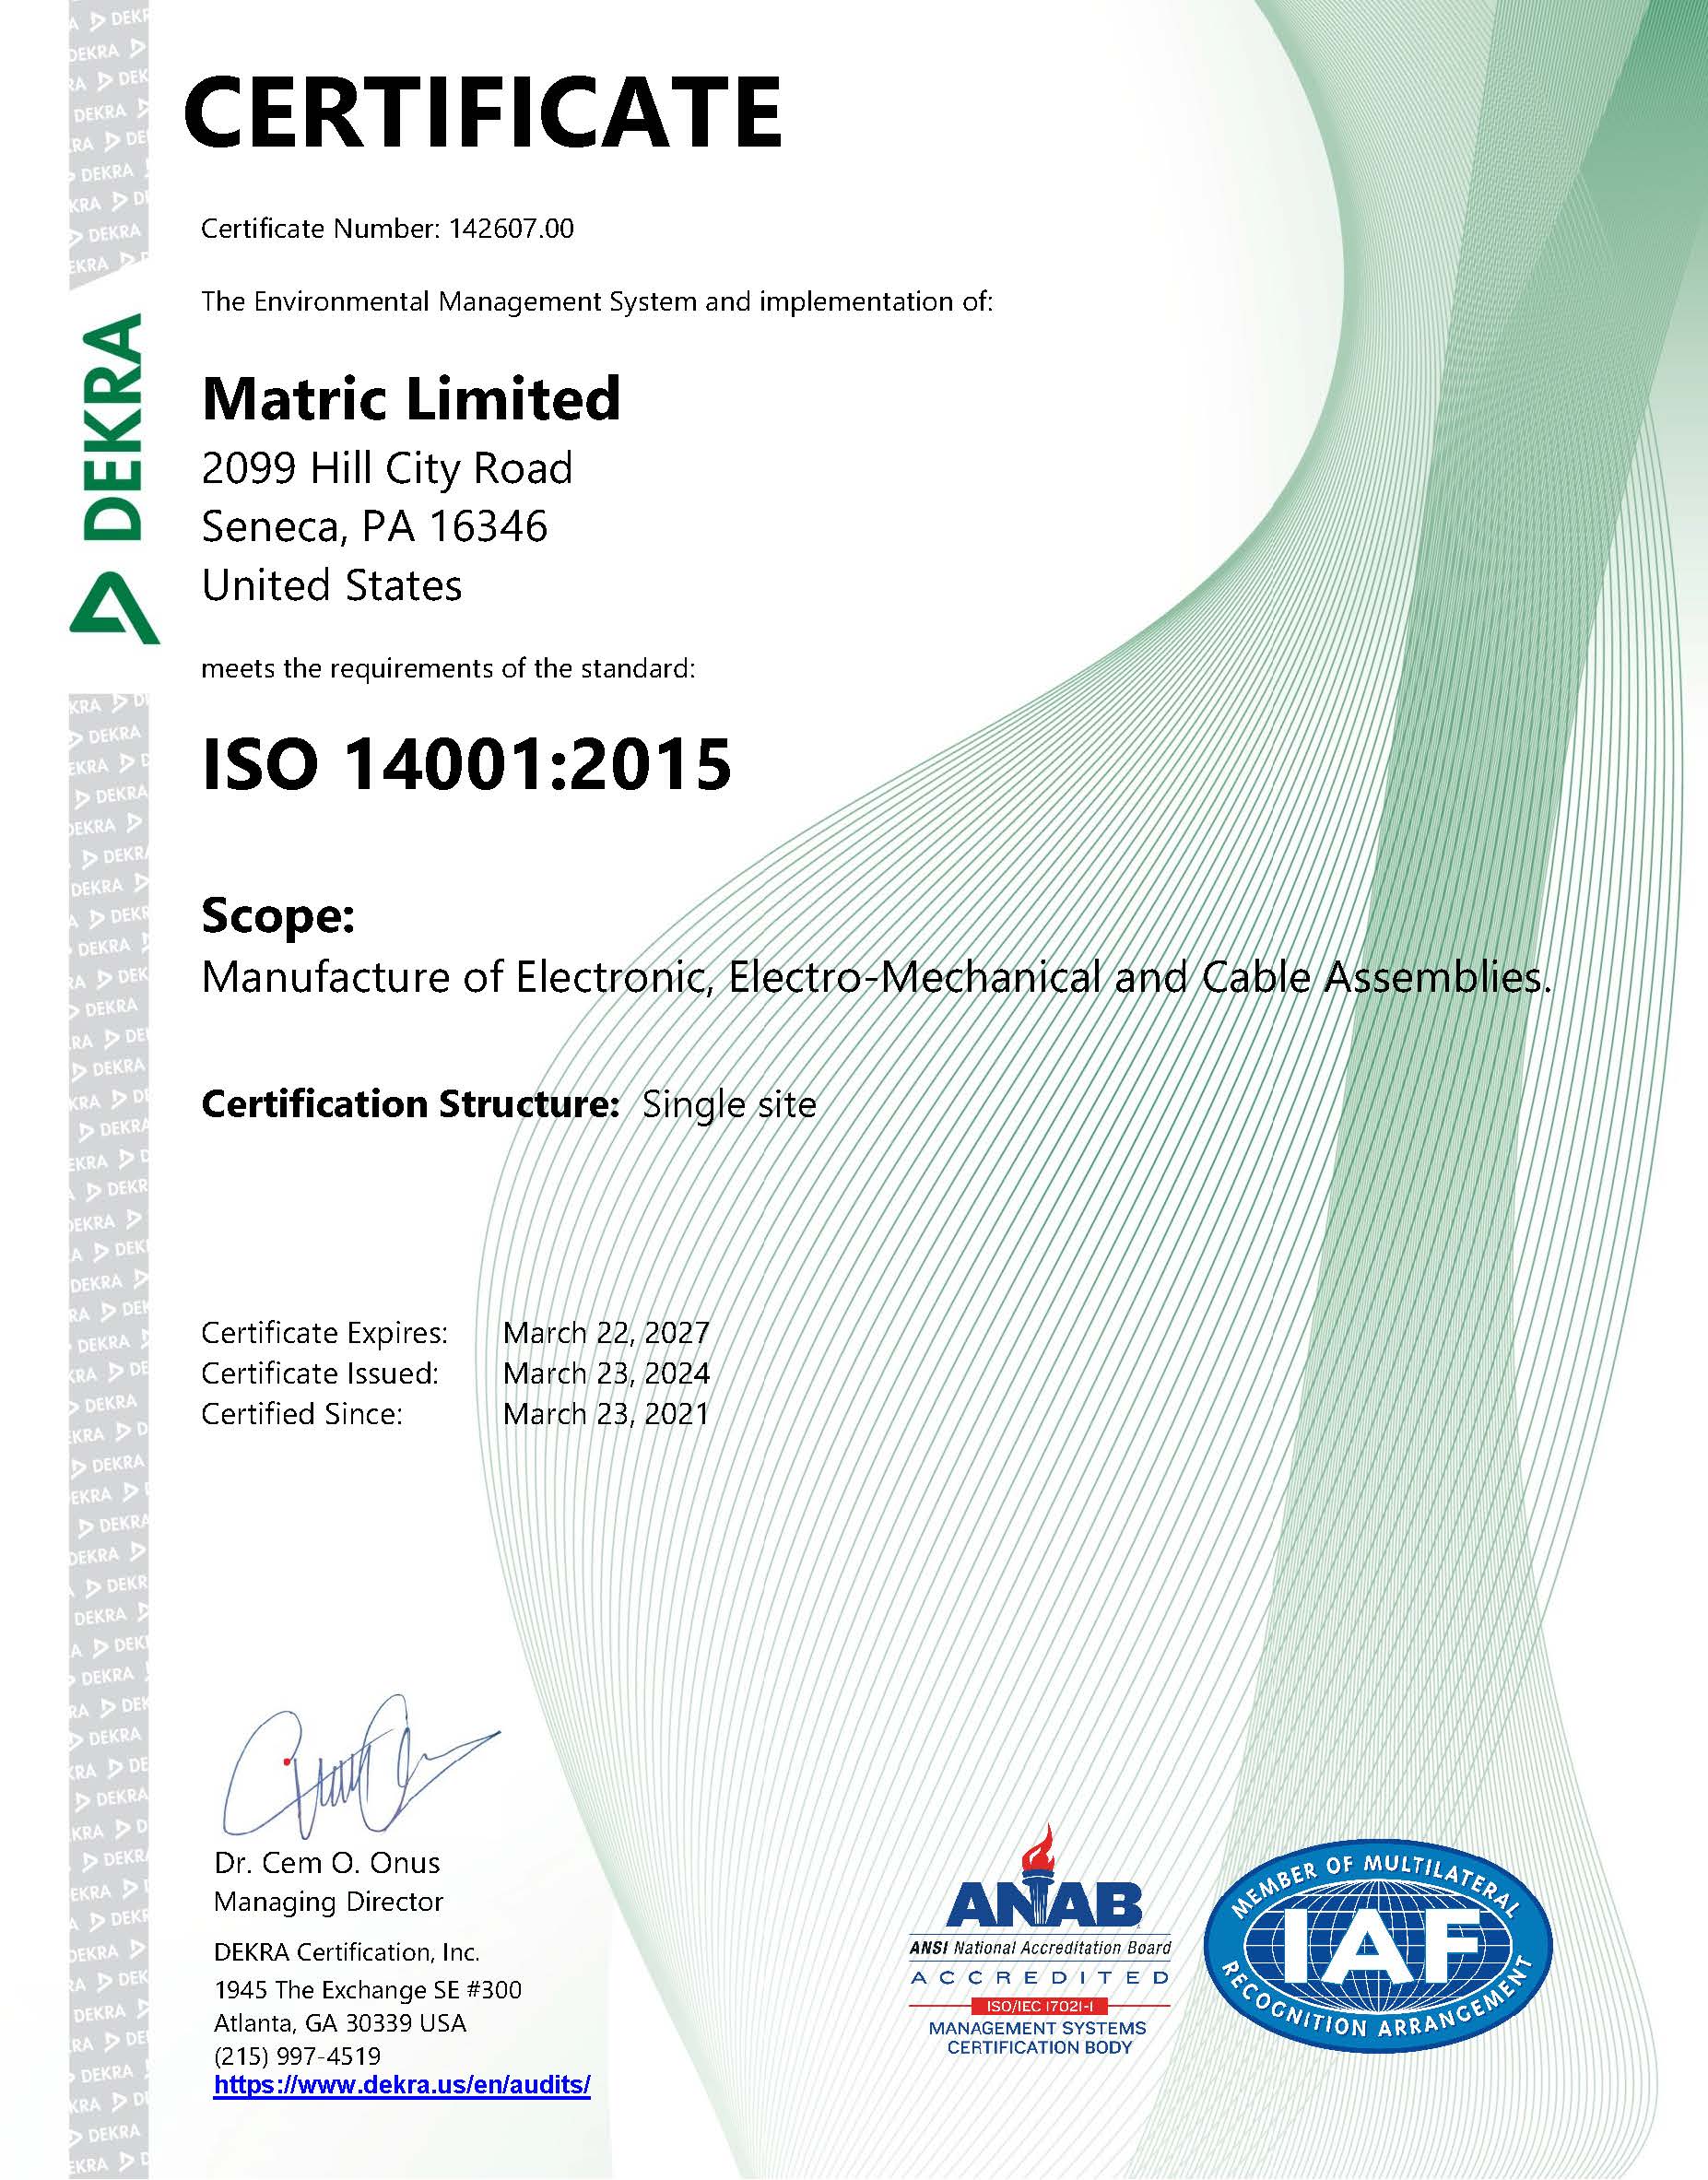 Data 01-07 Rev 1 14001-2015 Certificate Reissued January 23, 2023